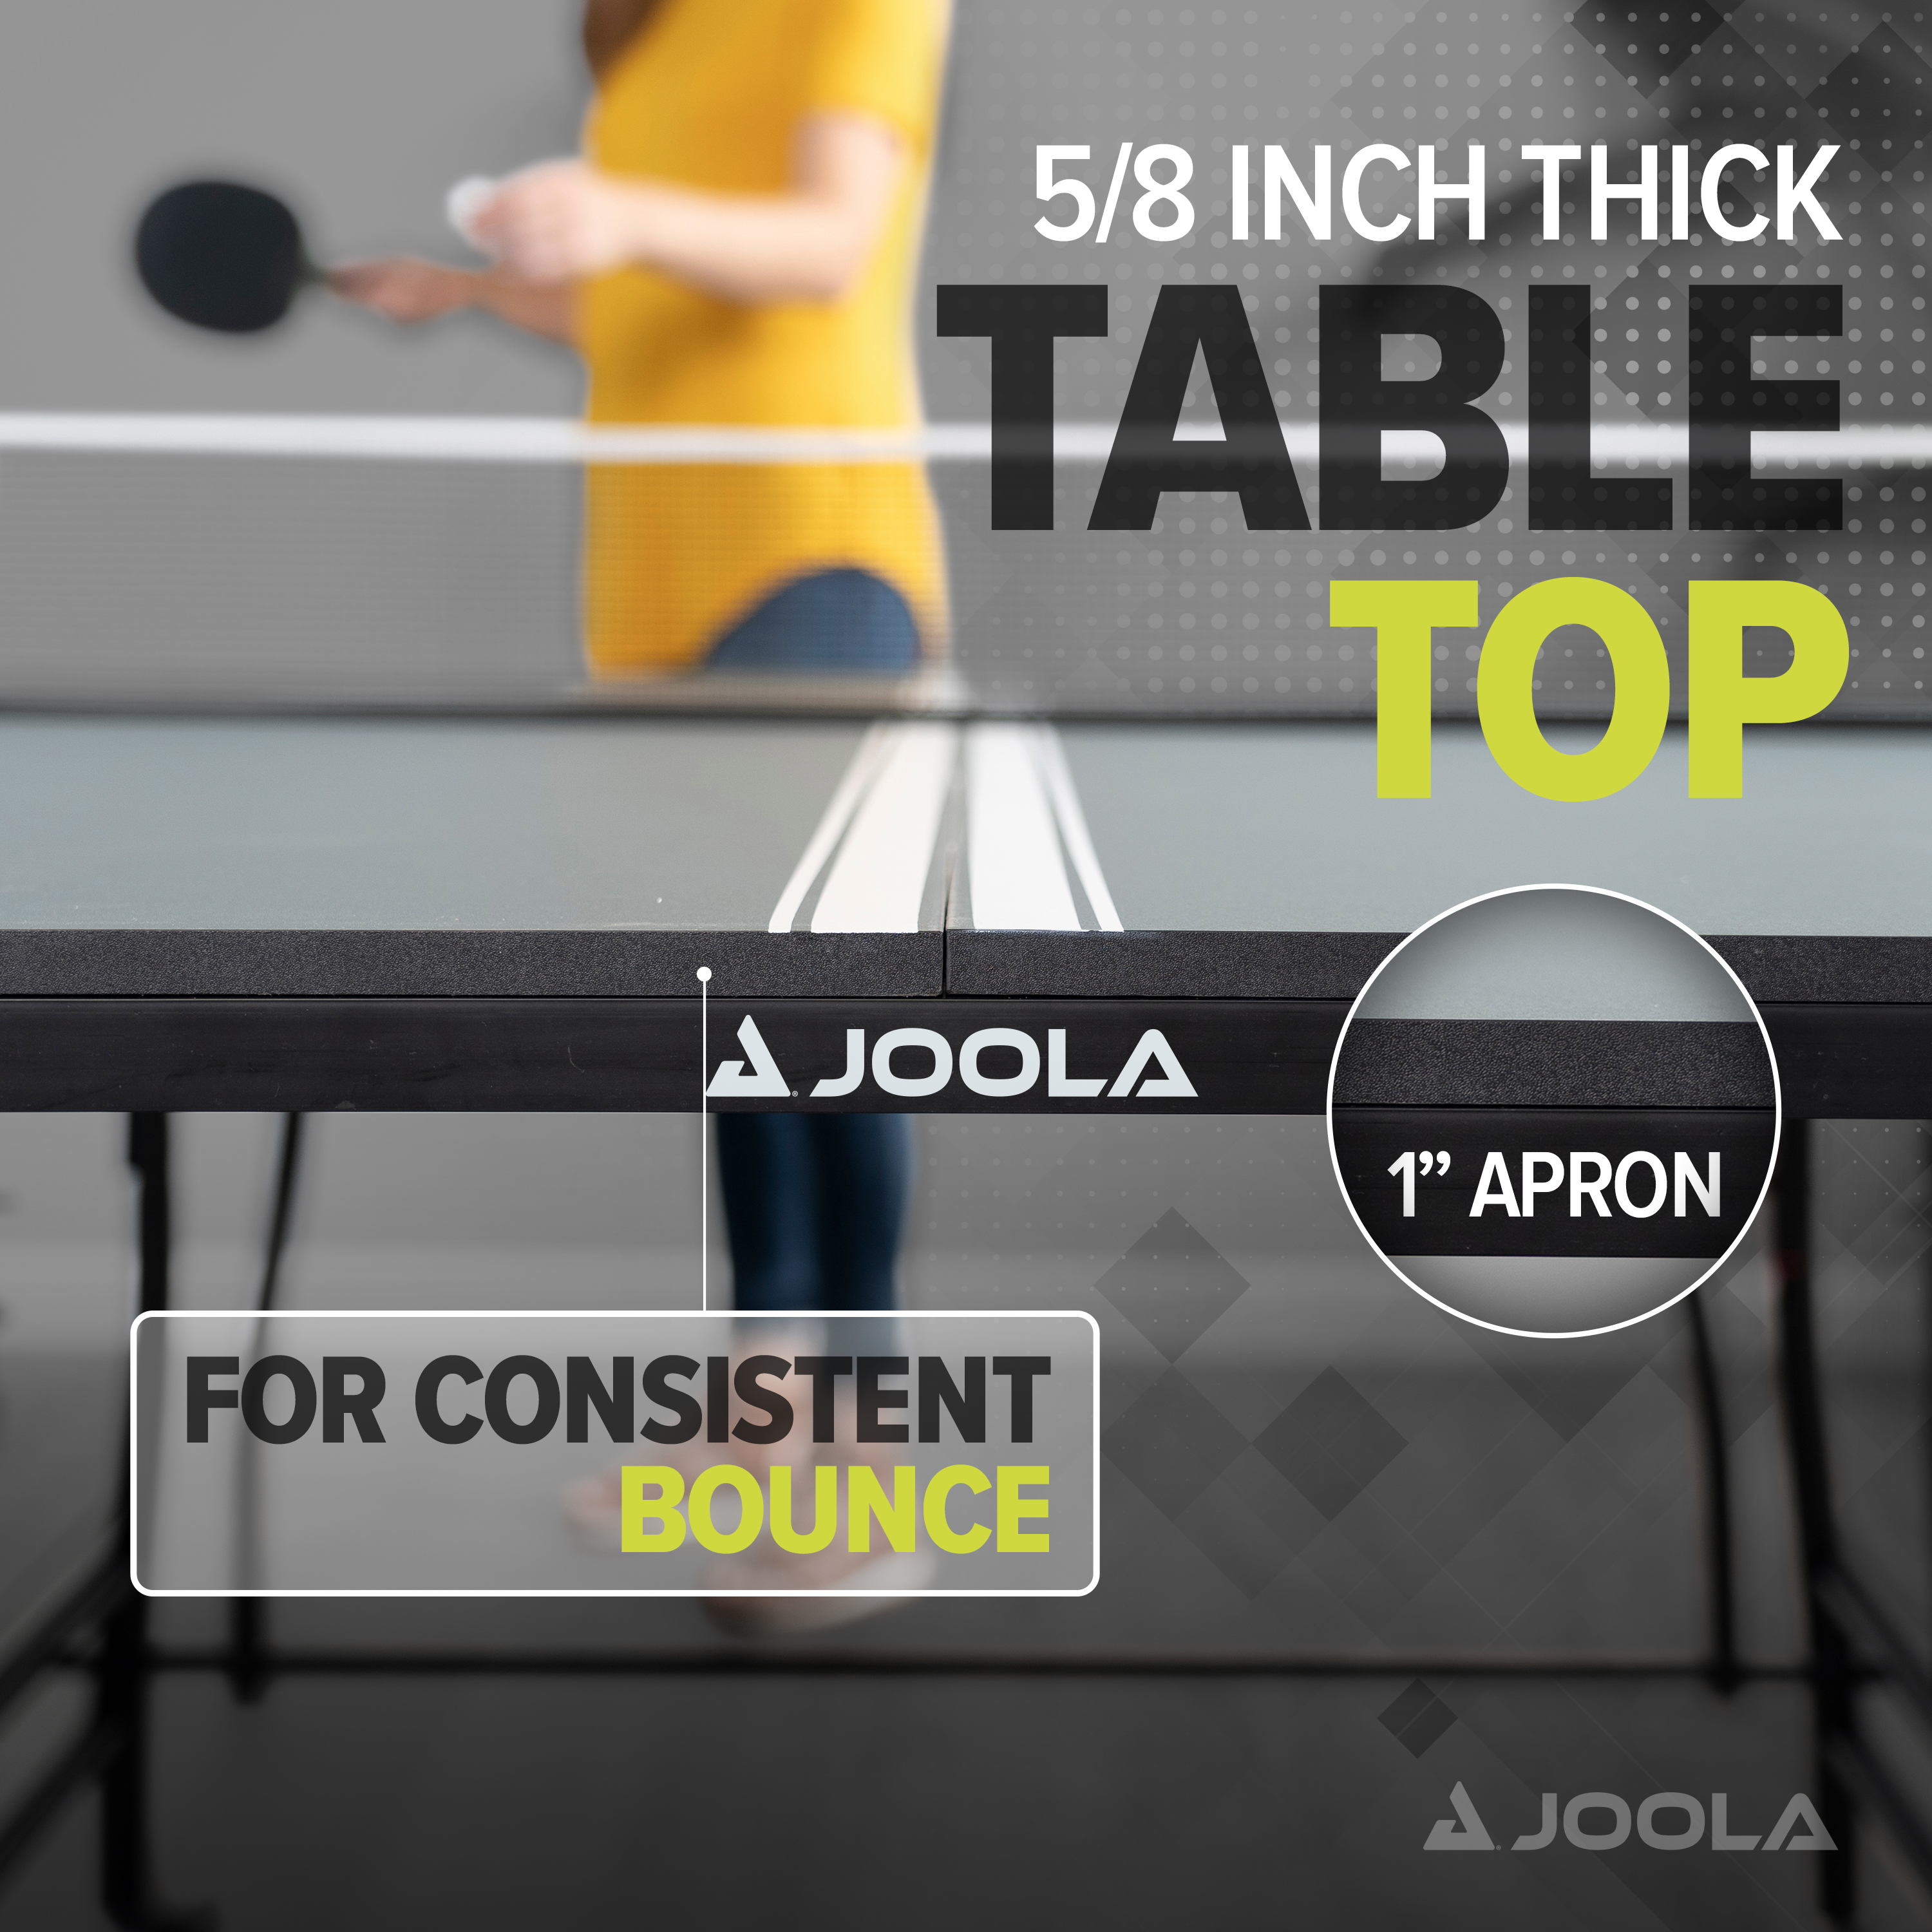 JOOLA Indoor Table Tennis Table, Green - image 5 of 7